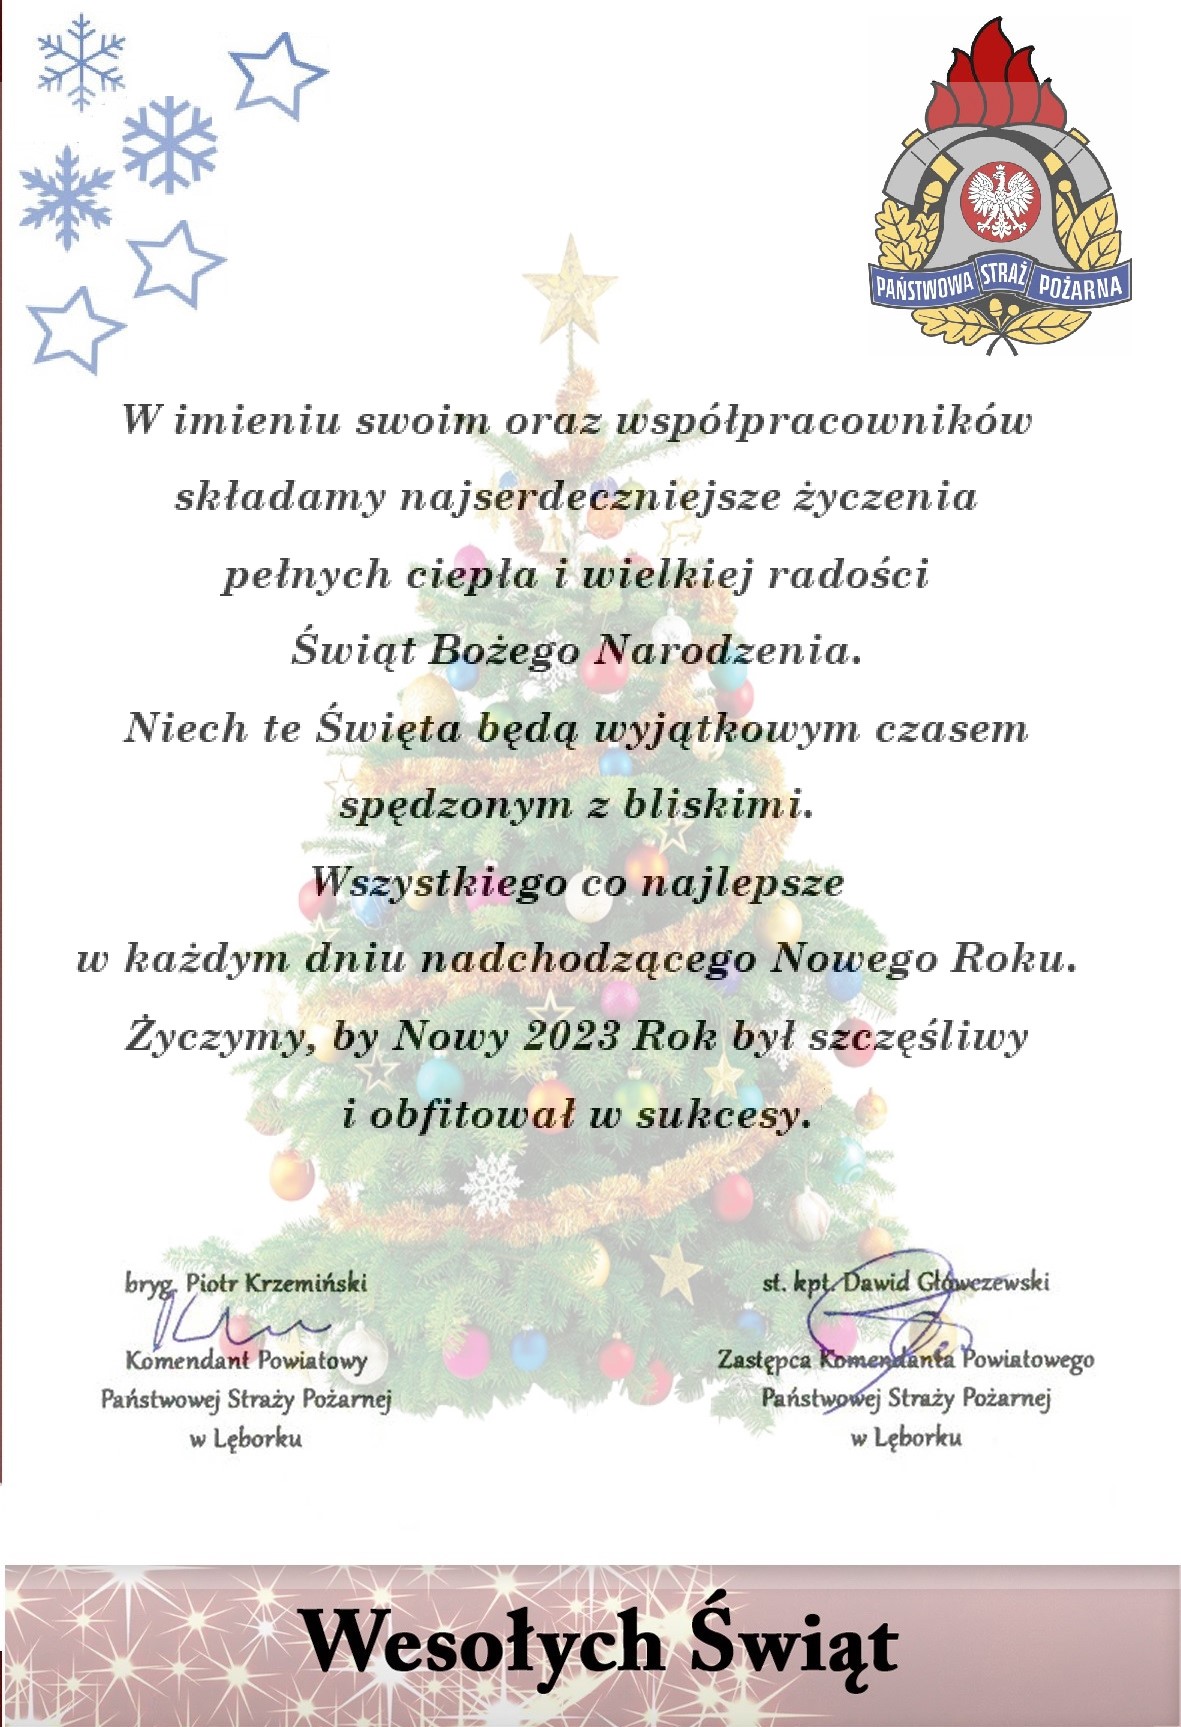 Życzenia świąteczno - noworoczne kierownictwa Komendy Powiatowej Państwowej Straży Pożarnej w Lęborku